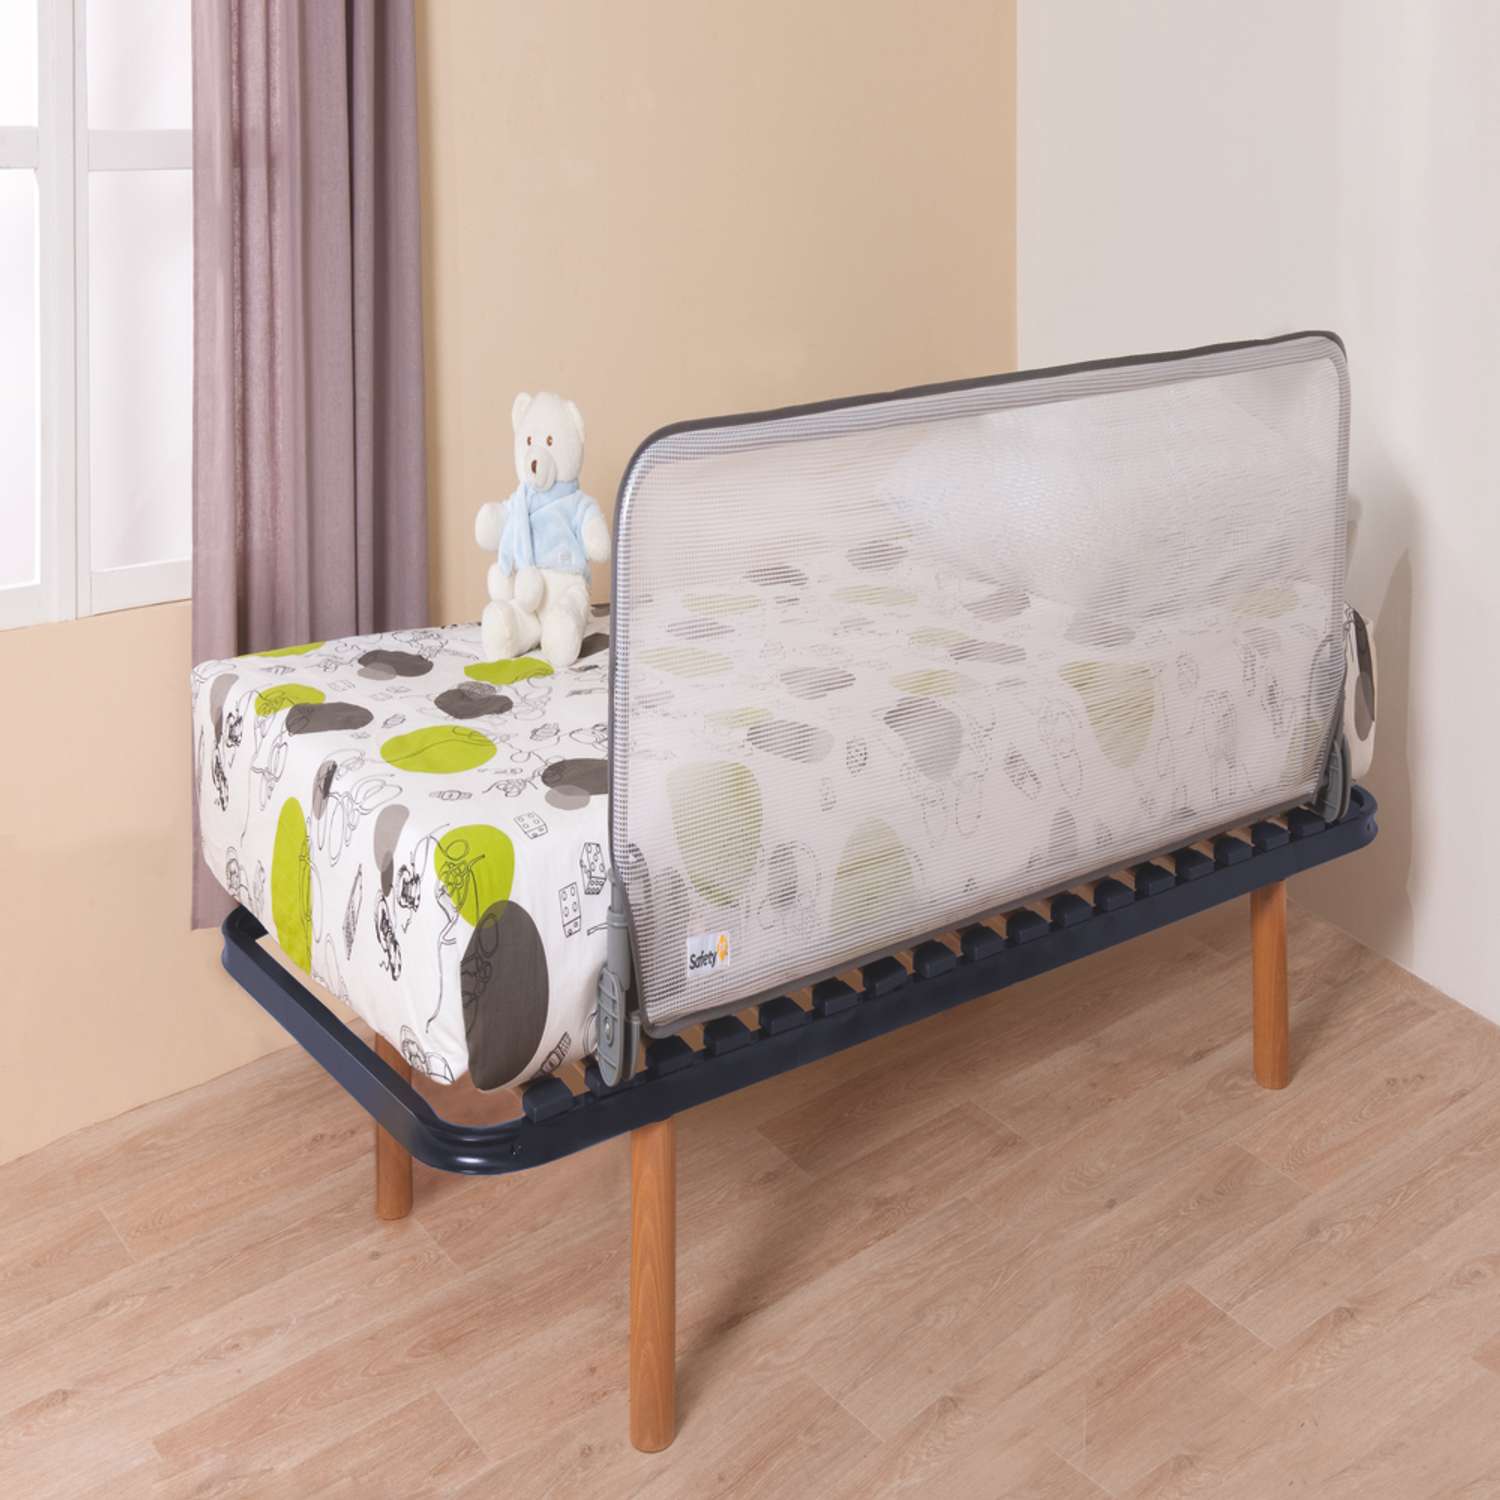 Барьер Safety 1st для детской кроватки Extra large Bed rail 150 см Белый/серый - фото 2